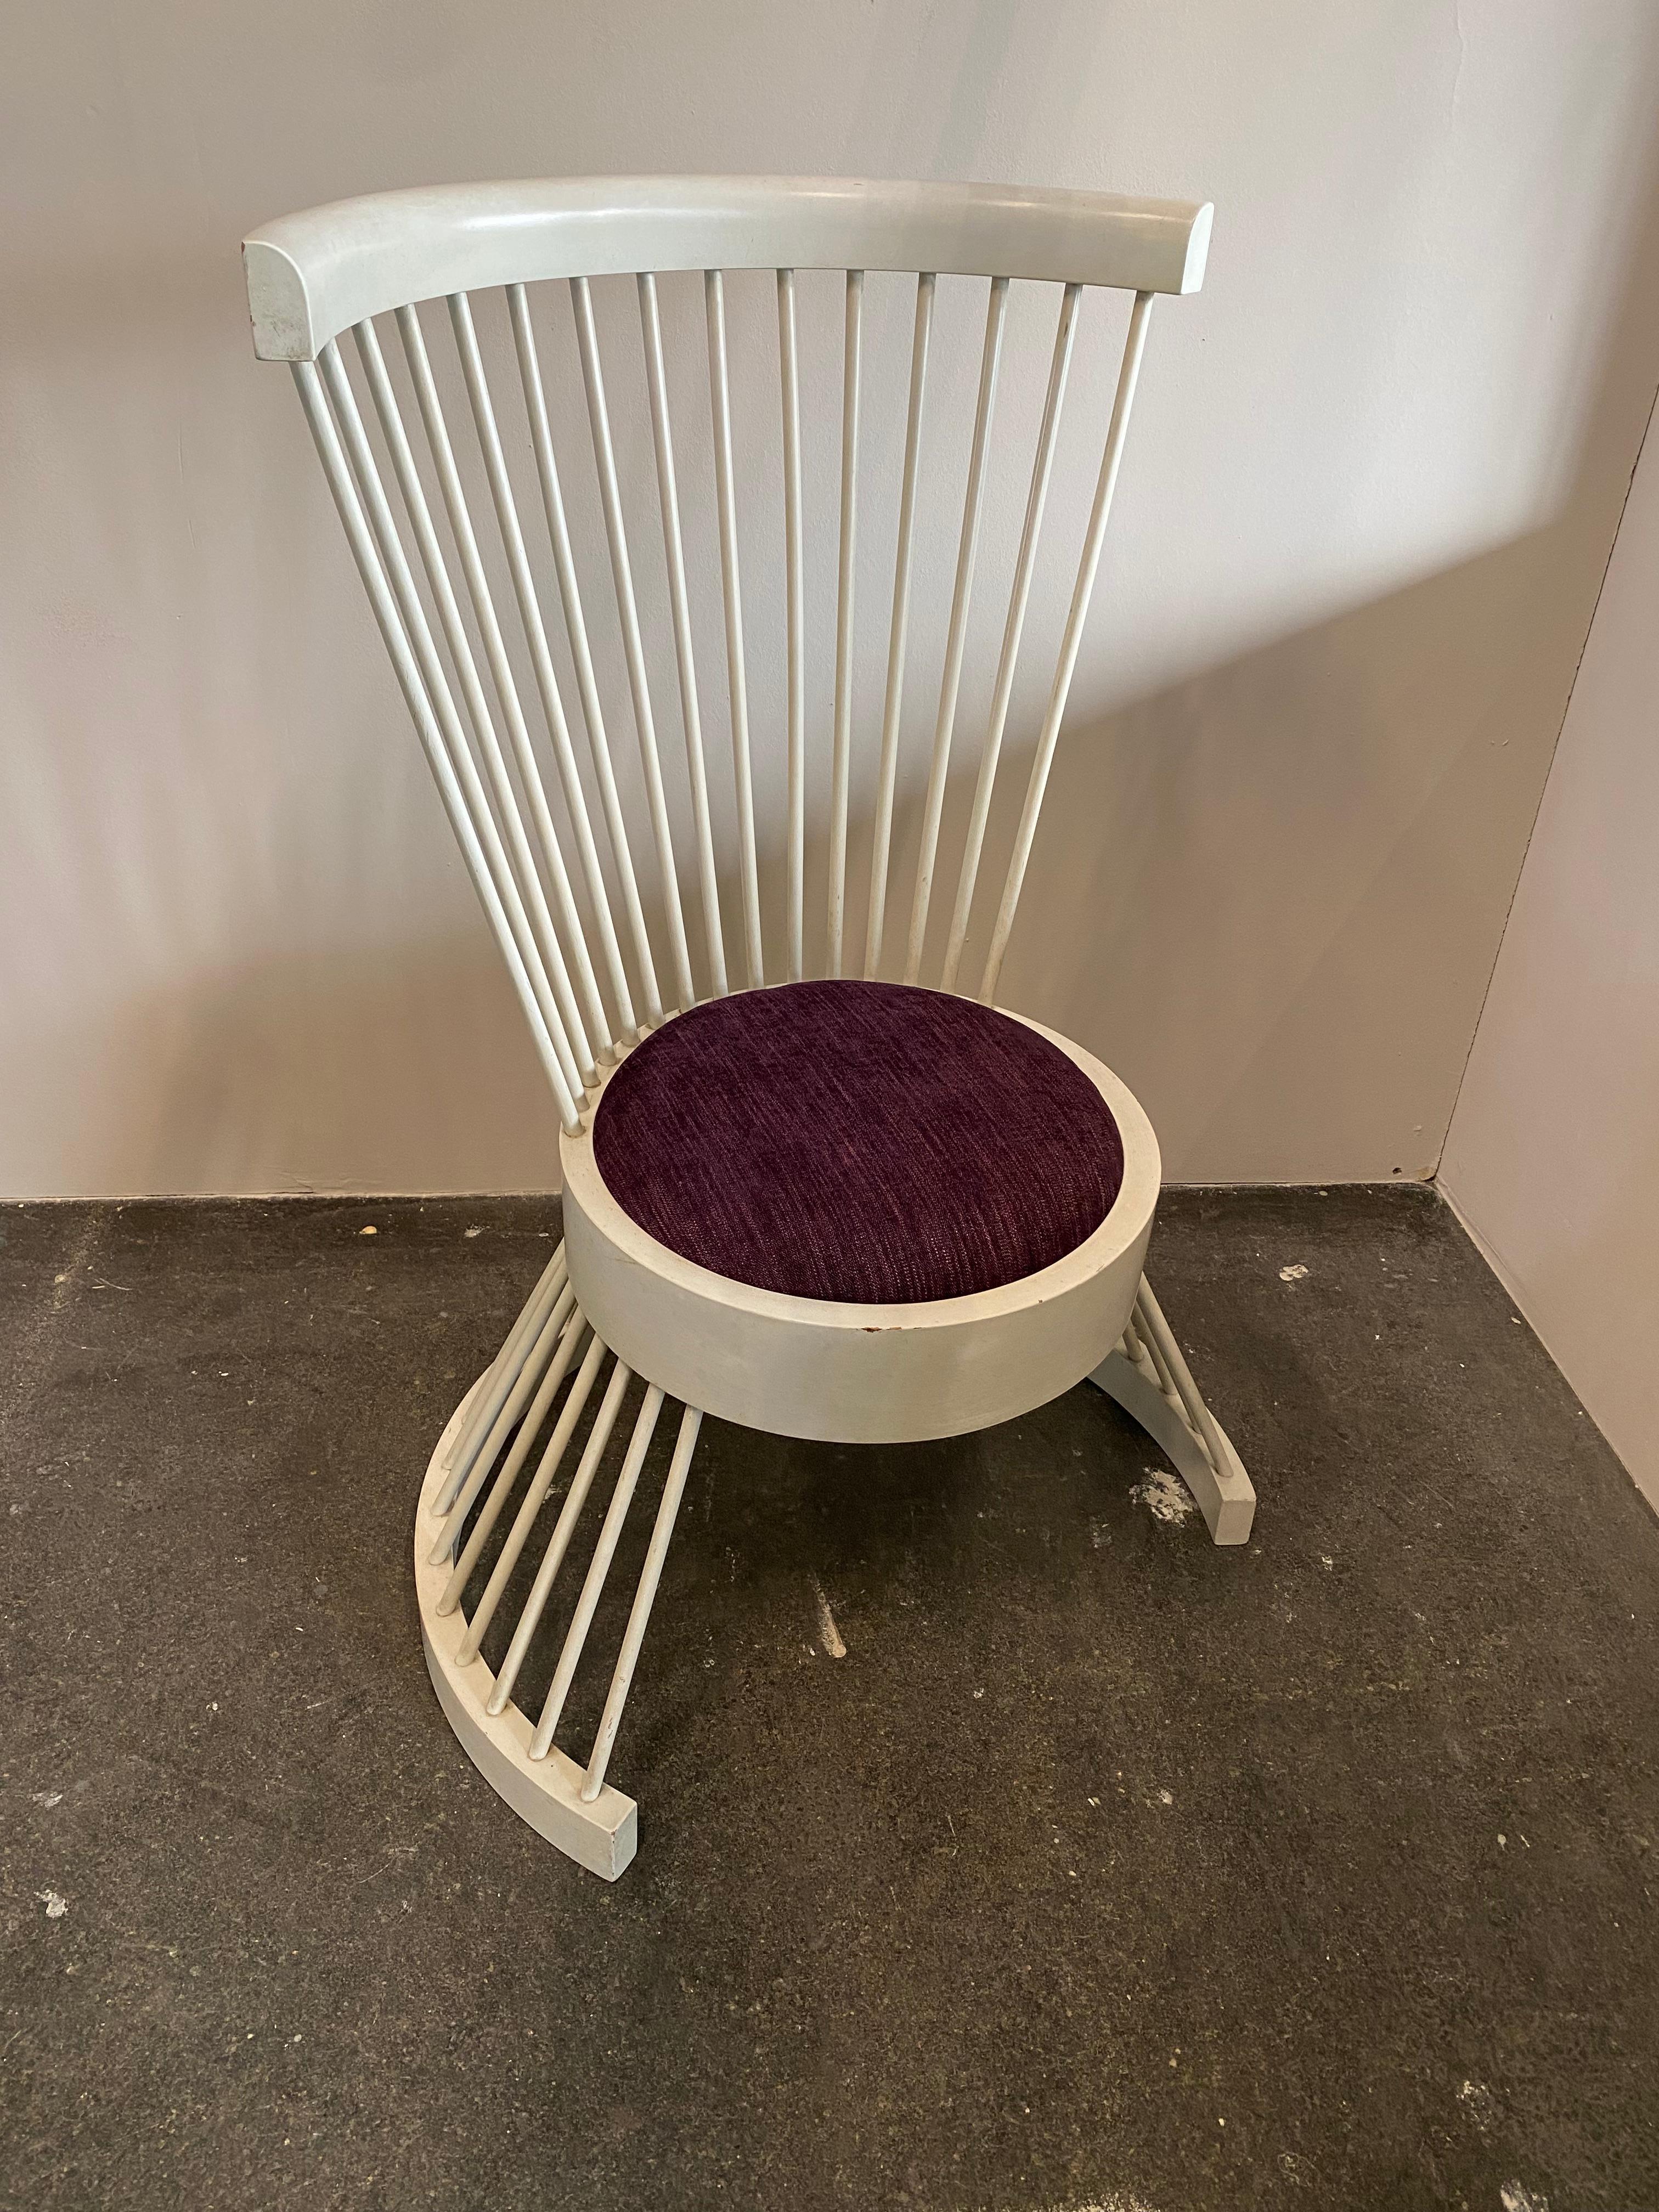 Dieser Stuhl von Horst Romanus Wanke ist ein ganz besonderes und seltenes Stück. Die hohe Rückenlehne macht den Stuhl fast zu einem Thron. Horst Romanus Wanke verwendet die vielen Holzstäbchen nicht nur für die Rückenlehne, sondern auch für die